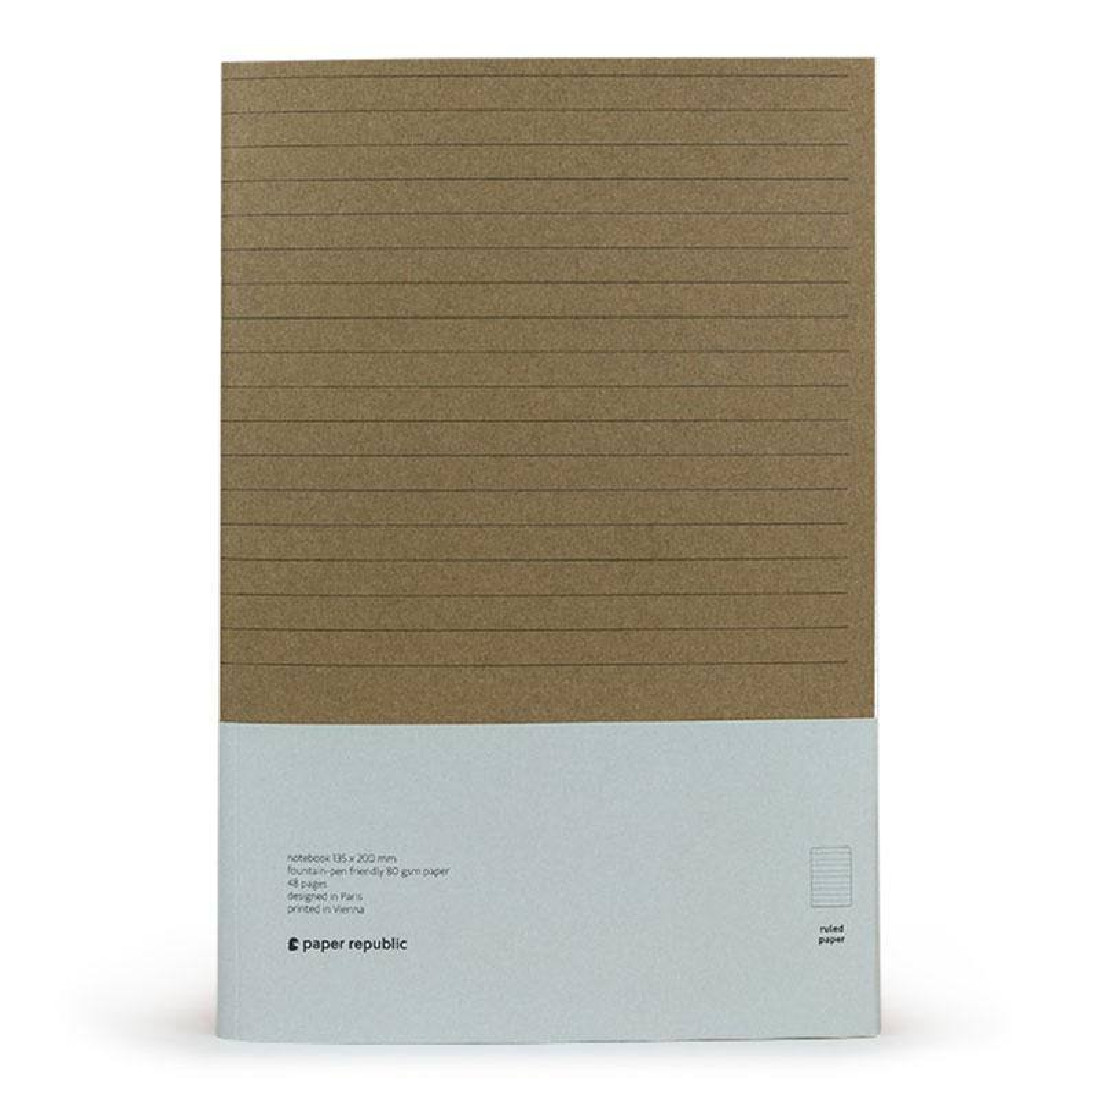 Paper Republic 2 x notebooks (xl) ruled